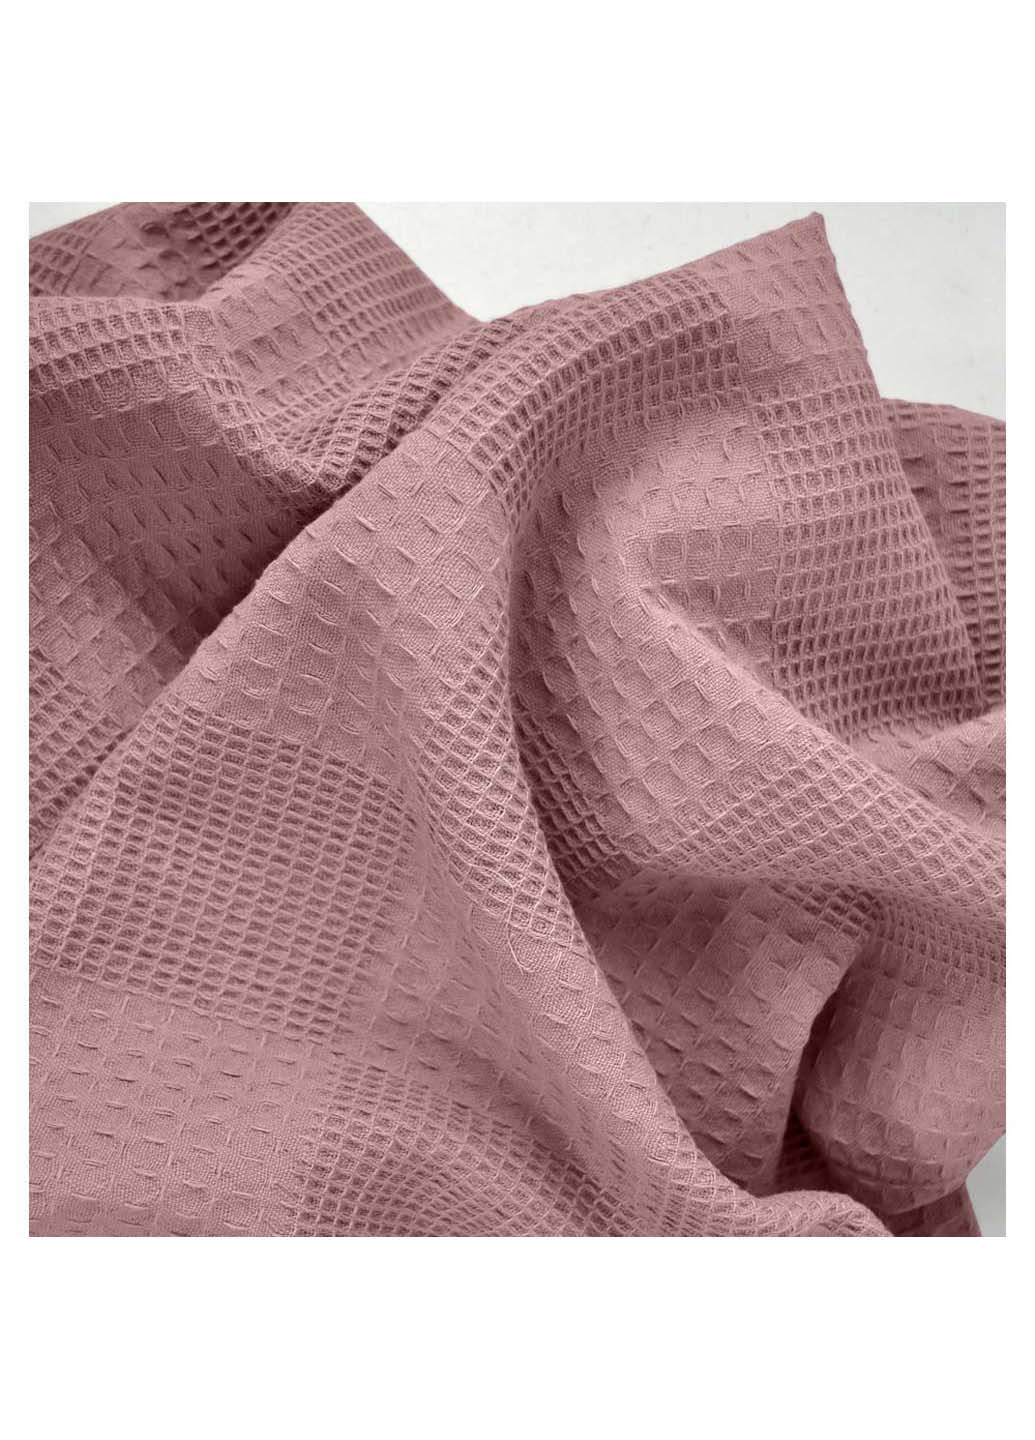 Cosas полотенце однотонный розовый производство -